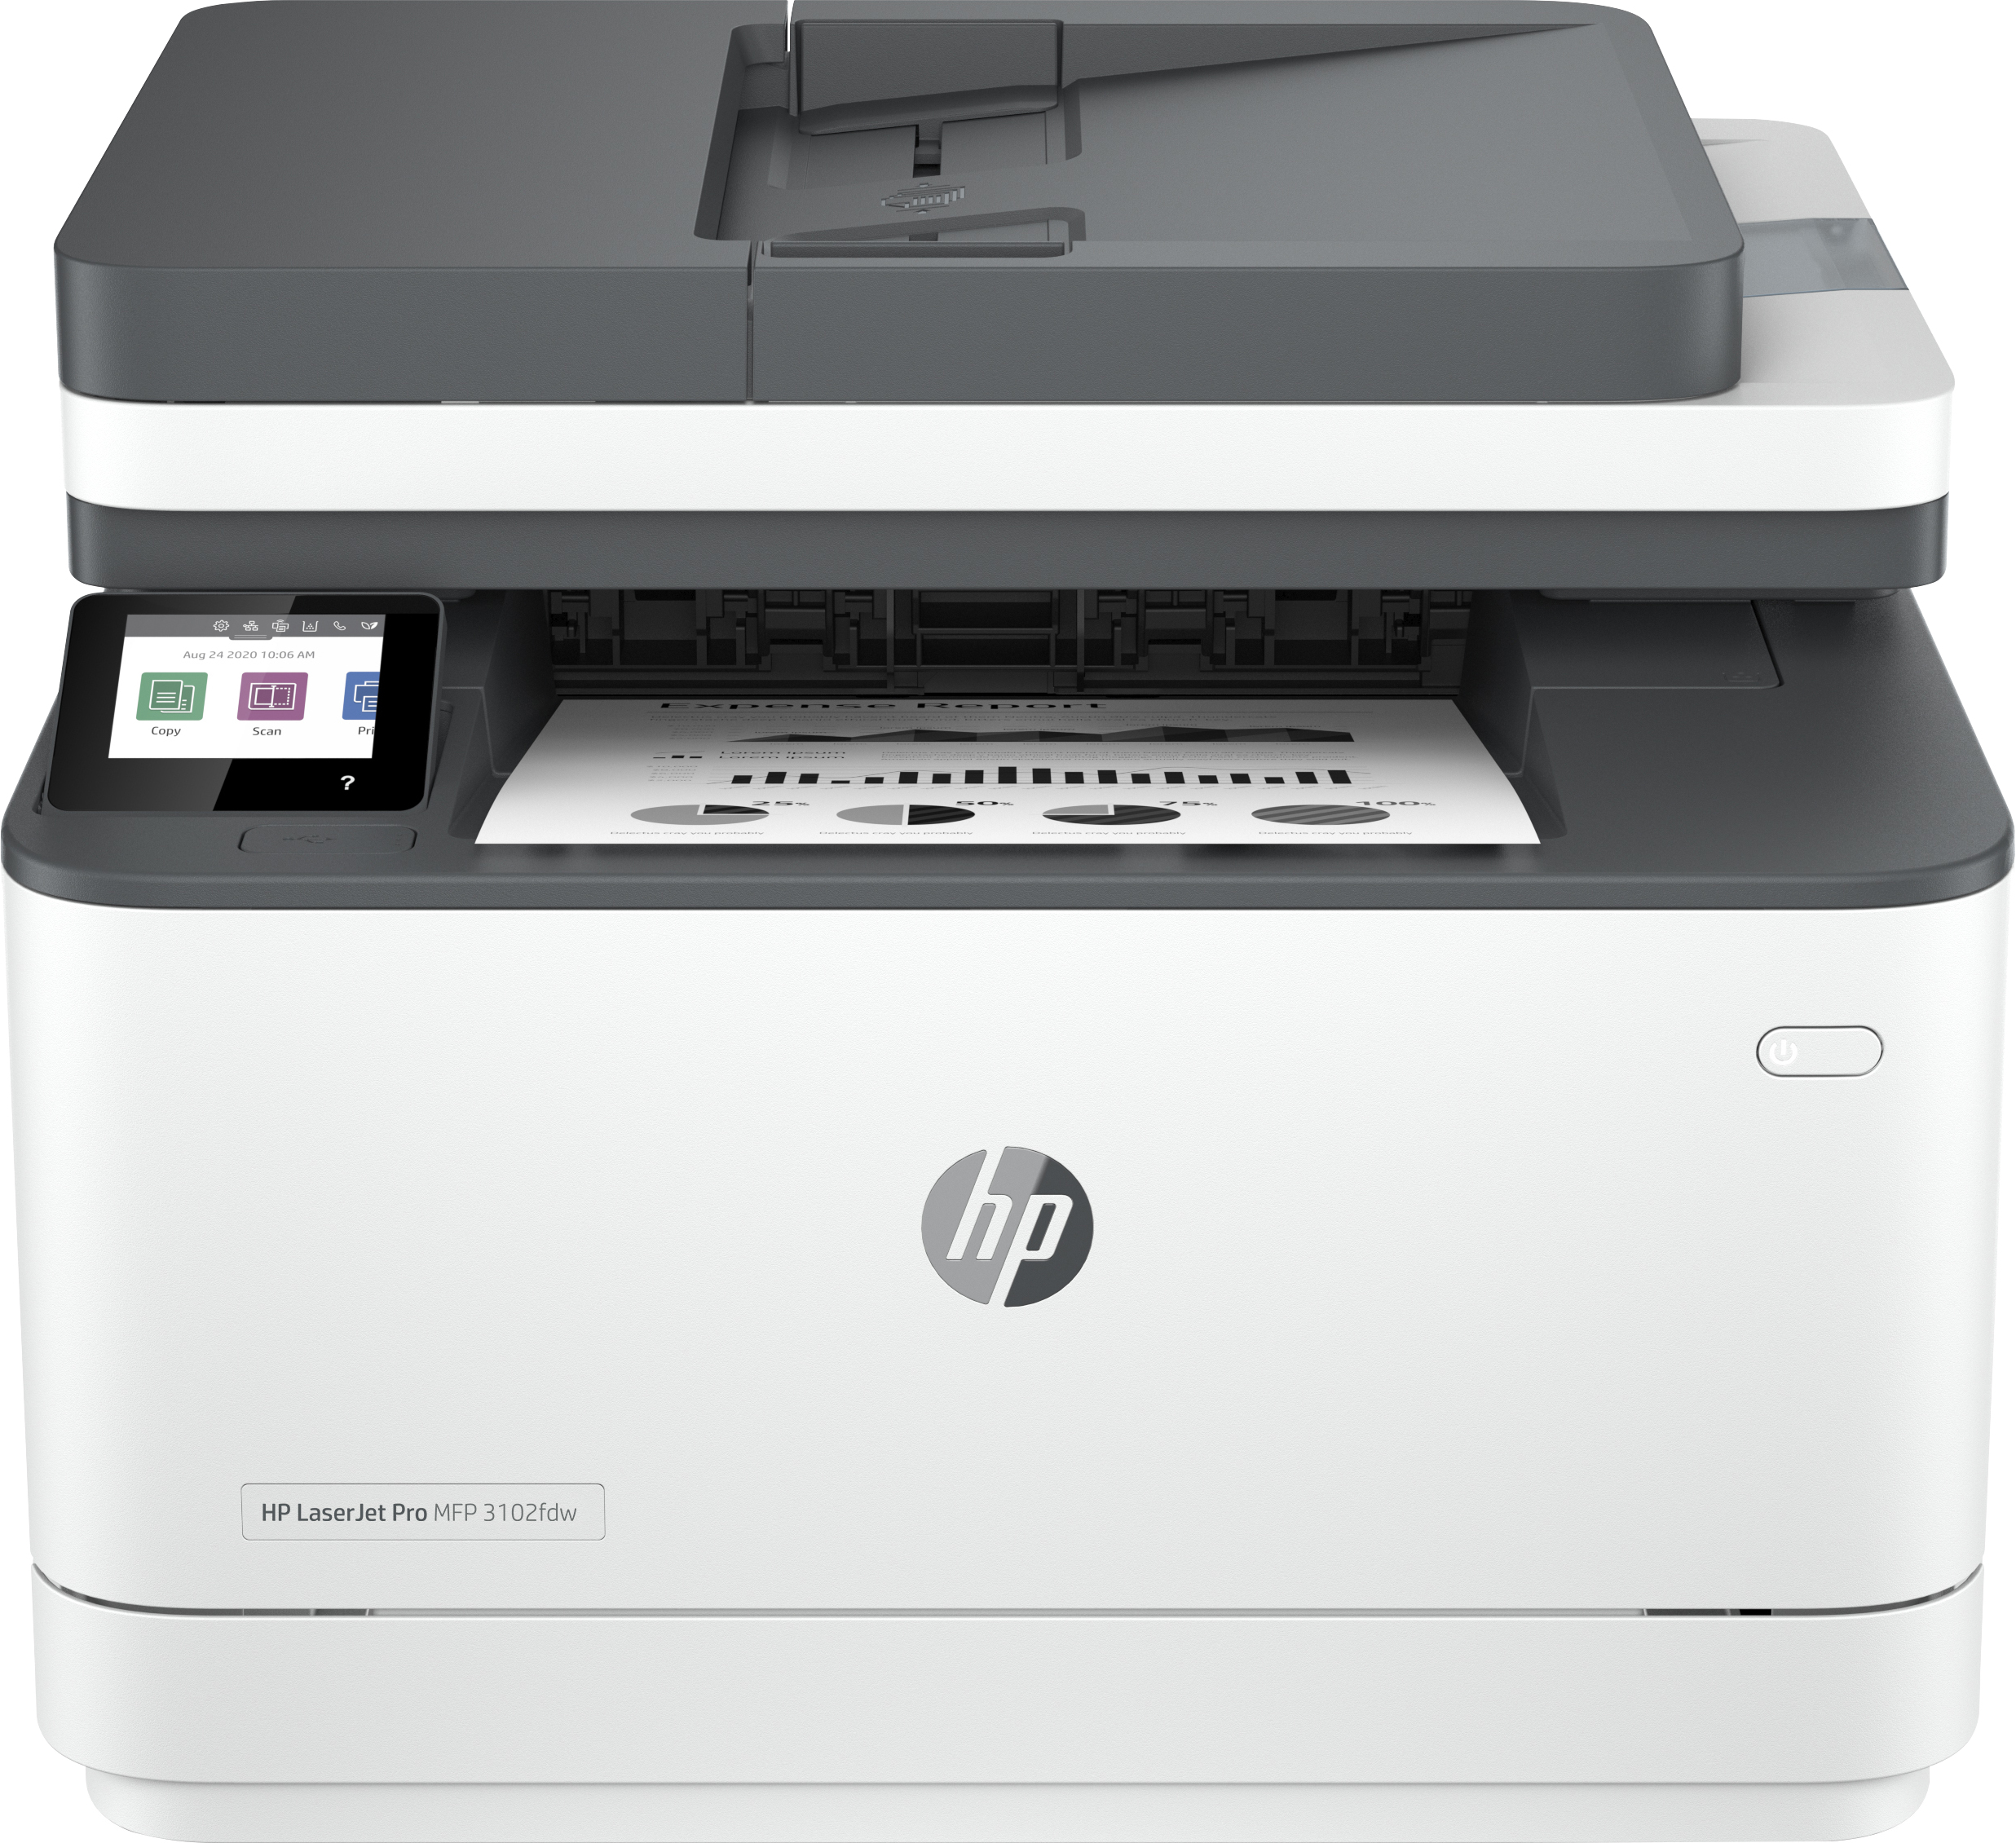 HP LaserJet Pro Stampante multifunzione 3102fdw, Bianco e nero, per Piccole medie imprese, Stampa, copia, scansione, fax, Stampa fronte/retro; Scansione verso e-mail; su PDF [3G630F#B19]